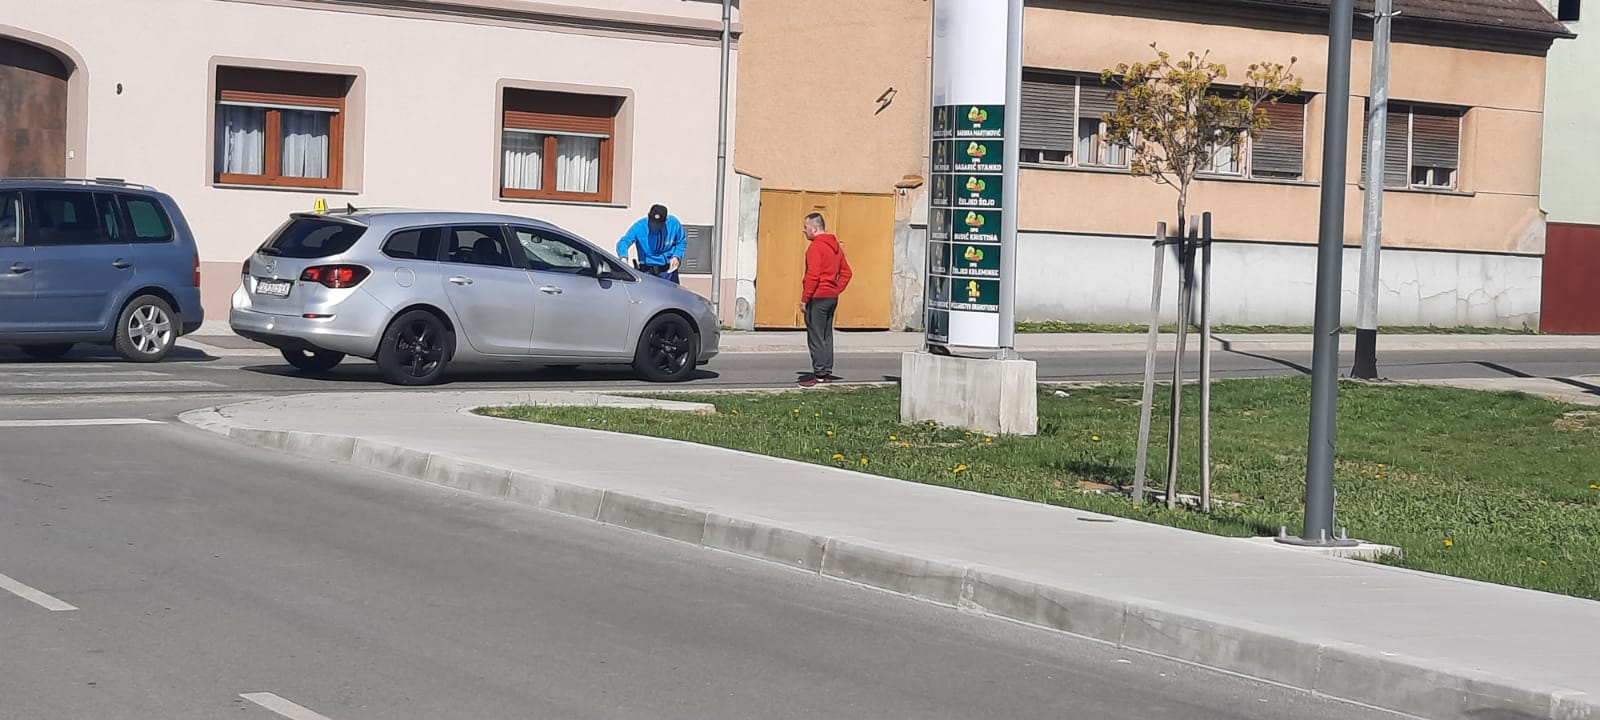 Požega.eu | Opel Astrom naletio na pješakinju Pleternici koja je bila na zebri